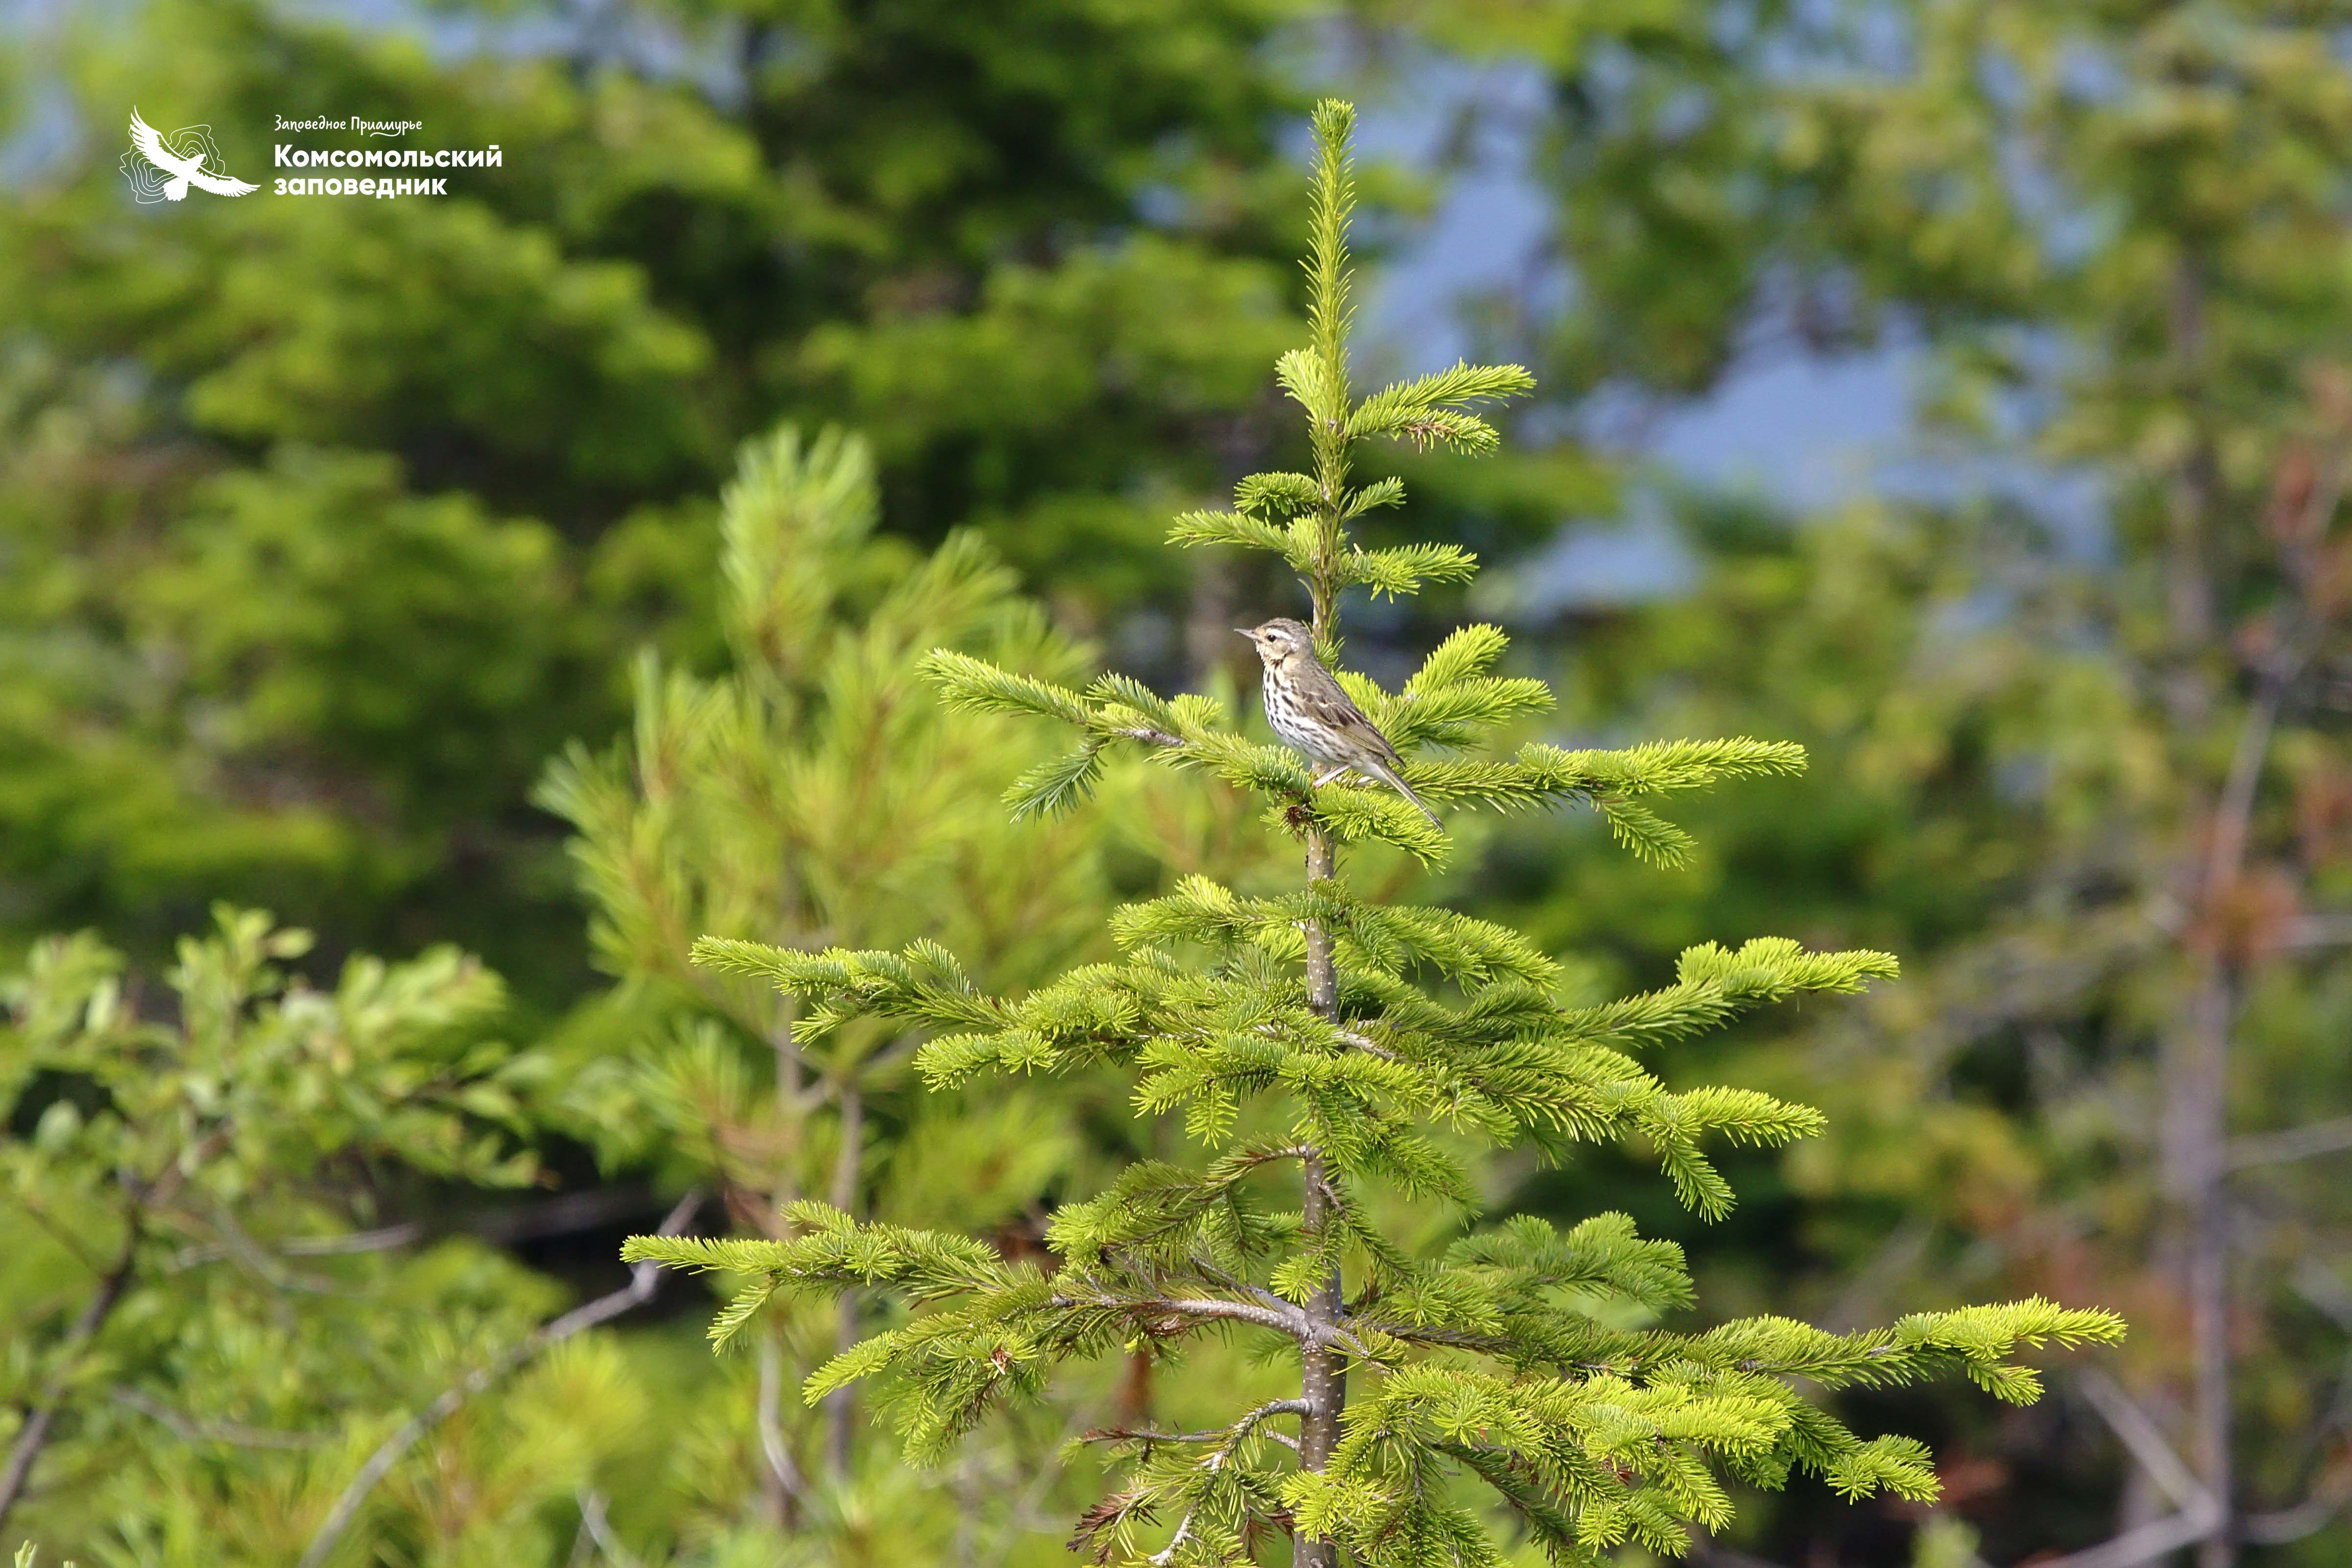 Птичка по праву может называться «санитаром леса»: за сезон маленький охотник может значительно «очистить» окрестности от вредителей. Фото: Денис Кочетков.